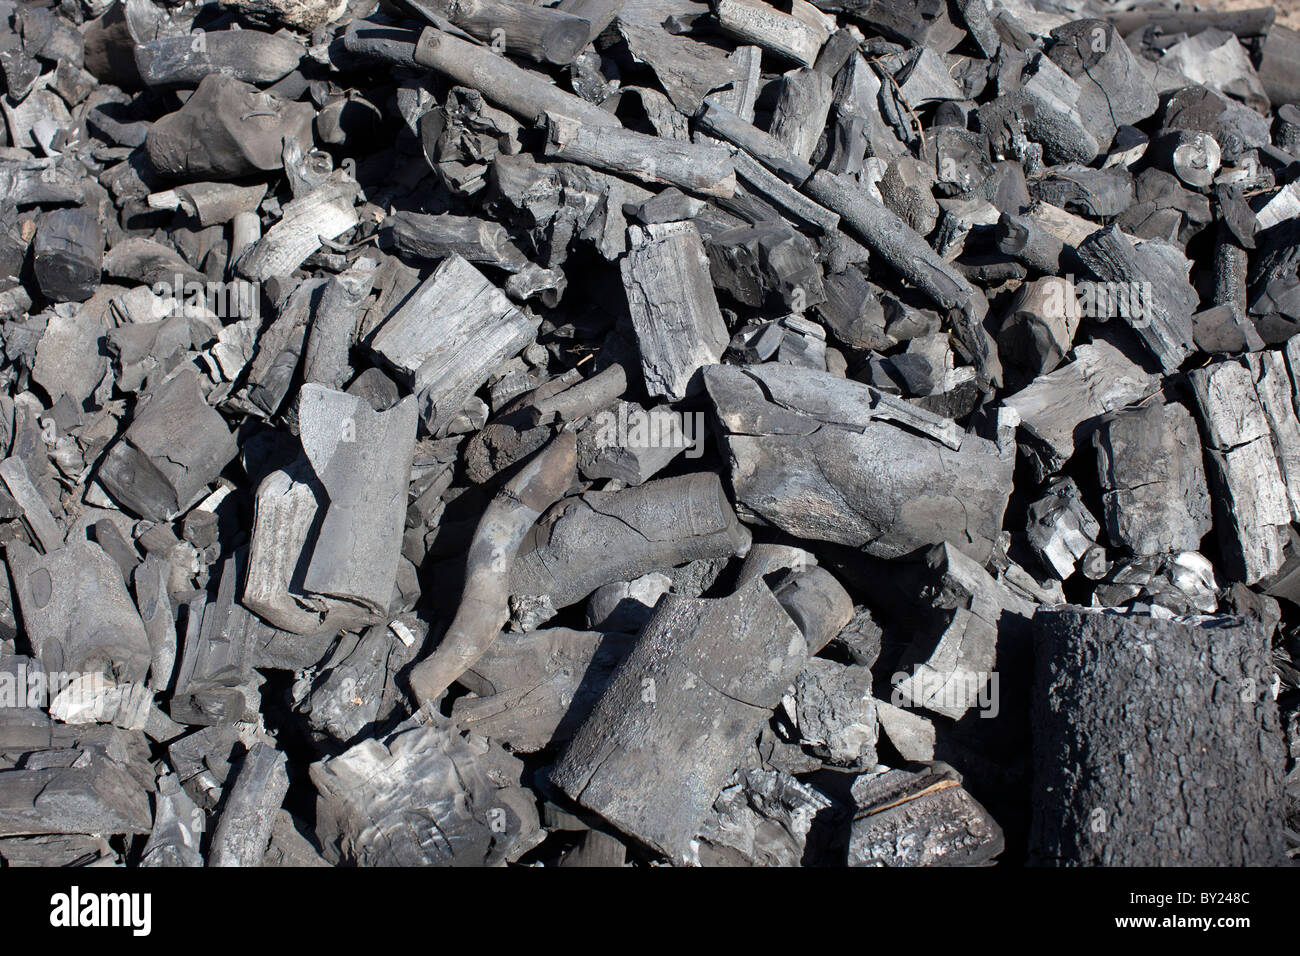 MAPUTO, Mozambique, mai 2010 : un producteur de charbon produit récemment en attente d'être mis dans des sacs pour la vente. Banque D'Images